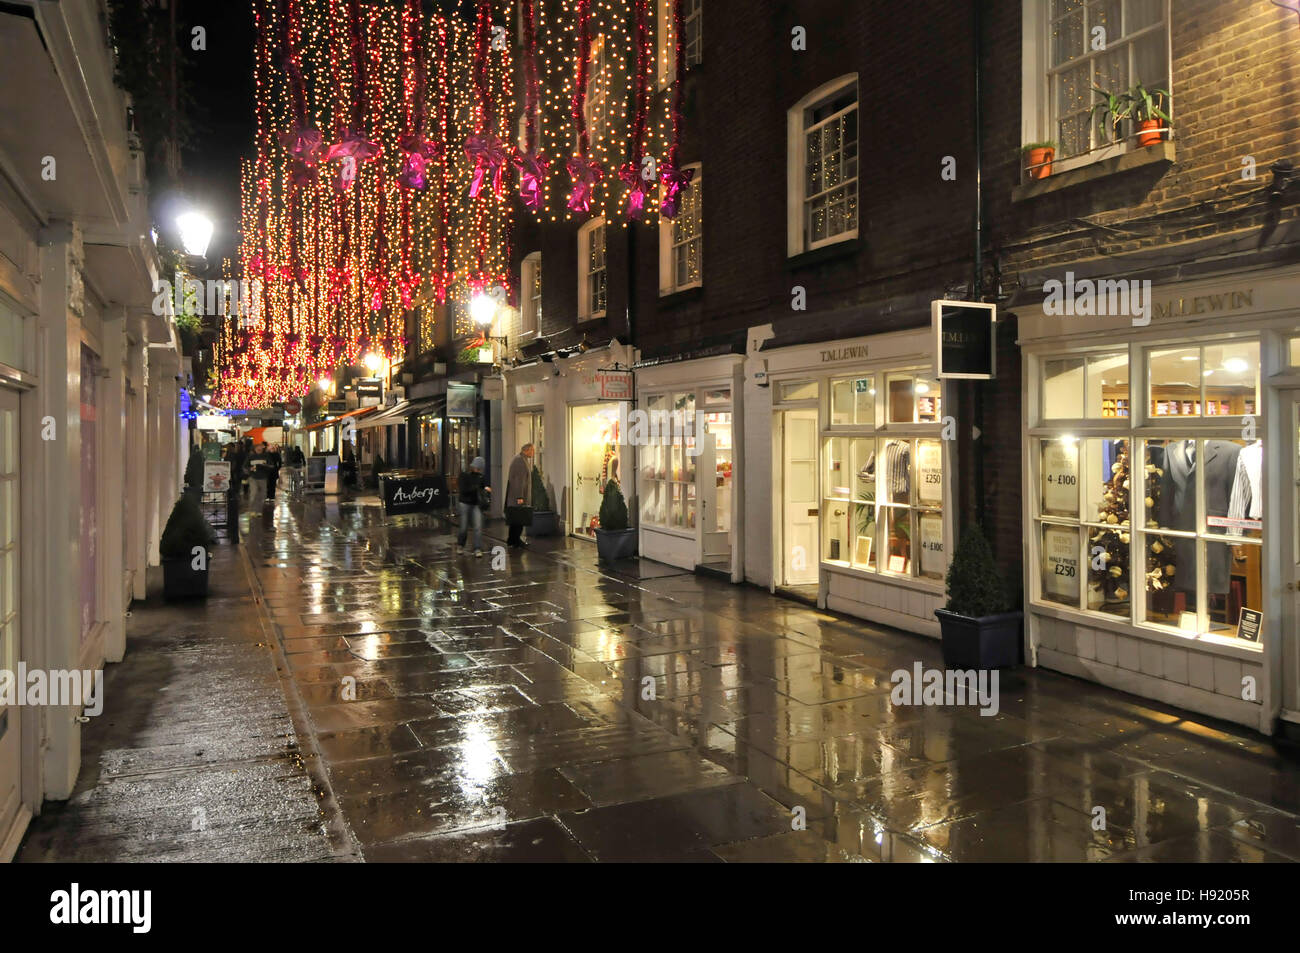 Weihnachtsschmuck lichter London West End Shopping, Essen mit kleinen Boutiquen St Christophers Platz gleich neben der Oxford Street regnerischen Nacht Stockfoto